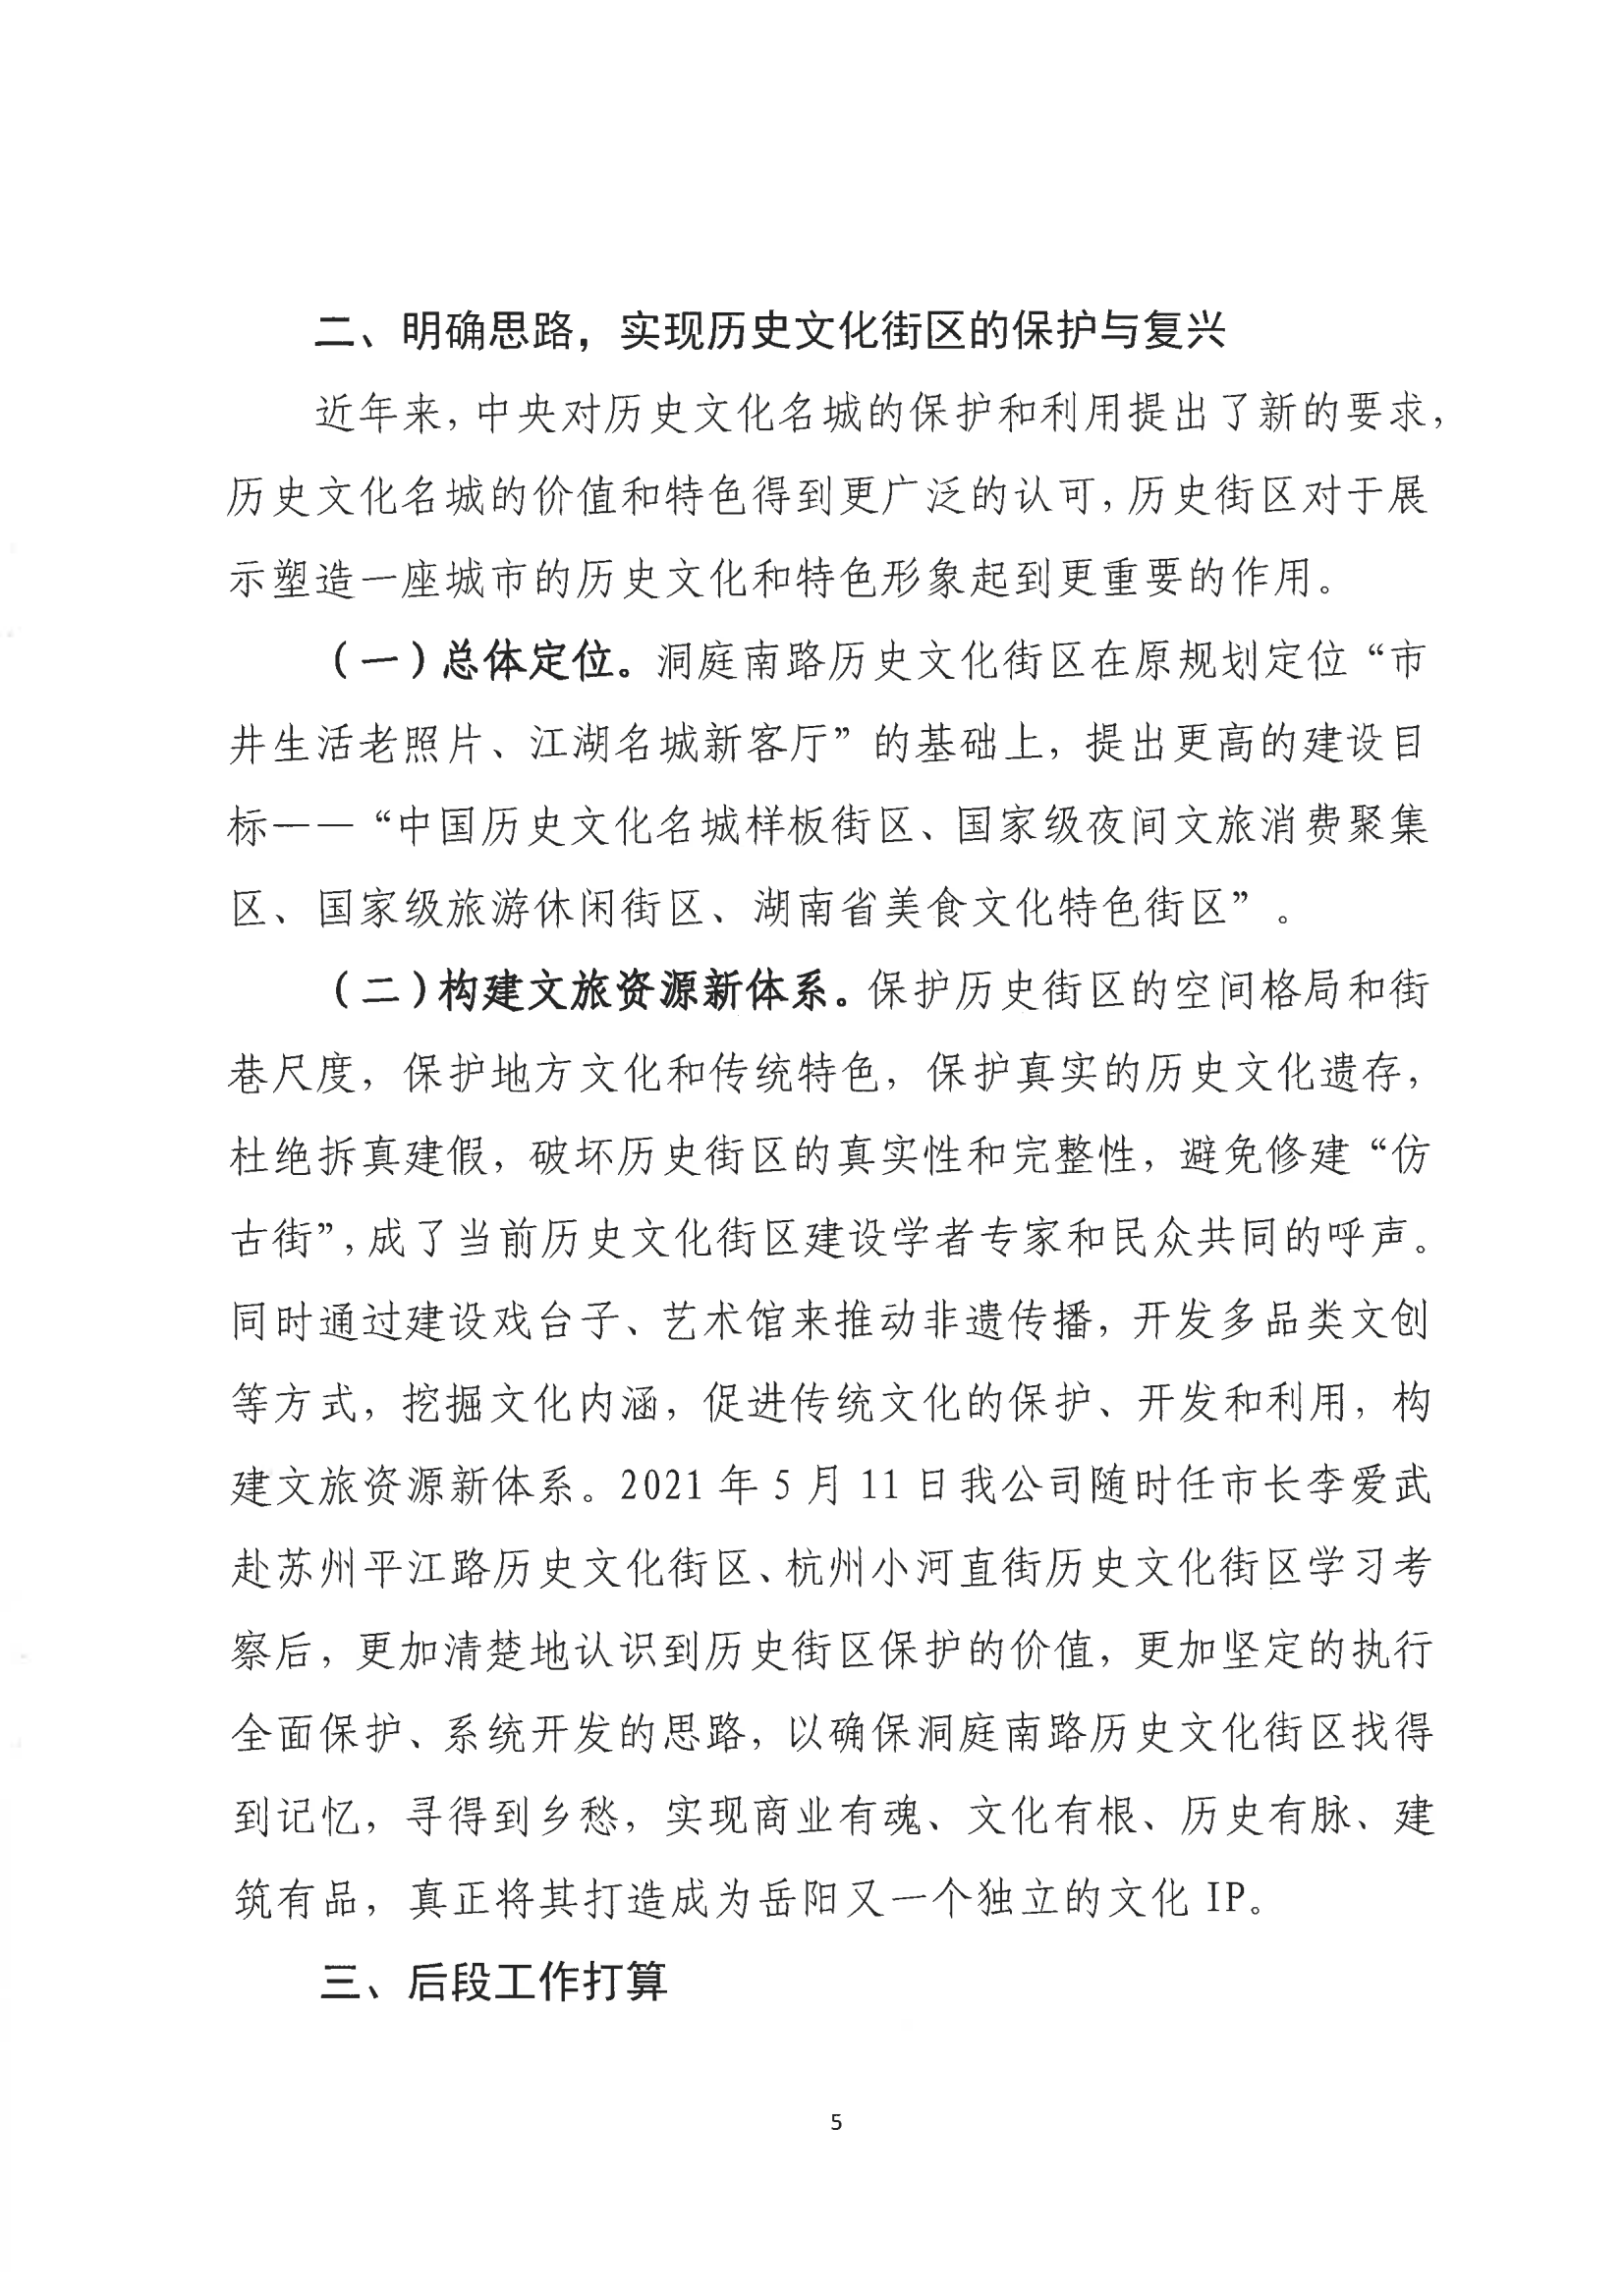 001号提案关于岳阳市政协九届一次会议第001号提案的回复(1)_04.png